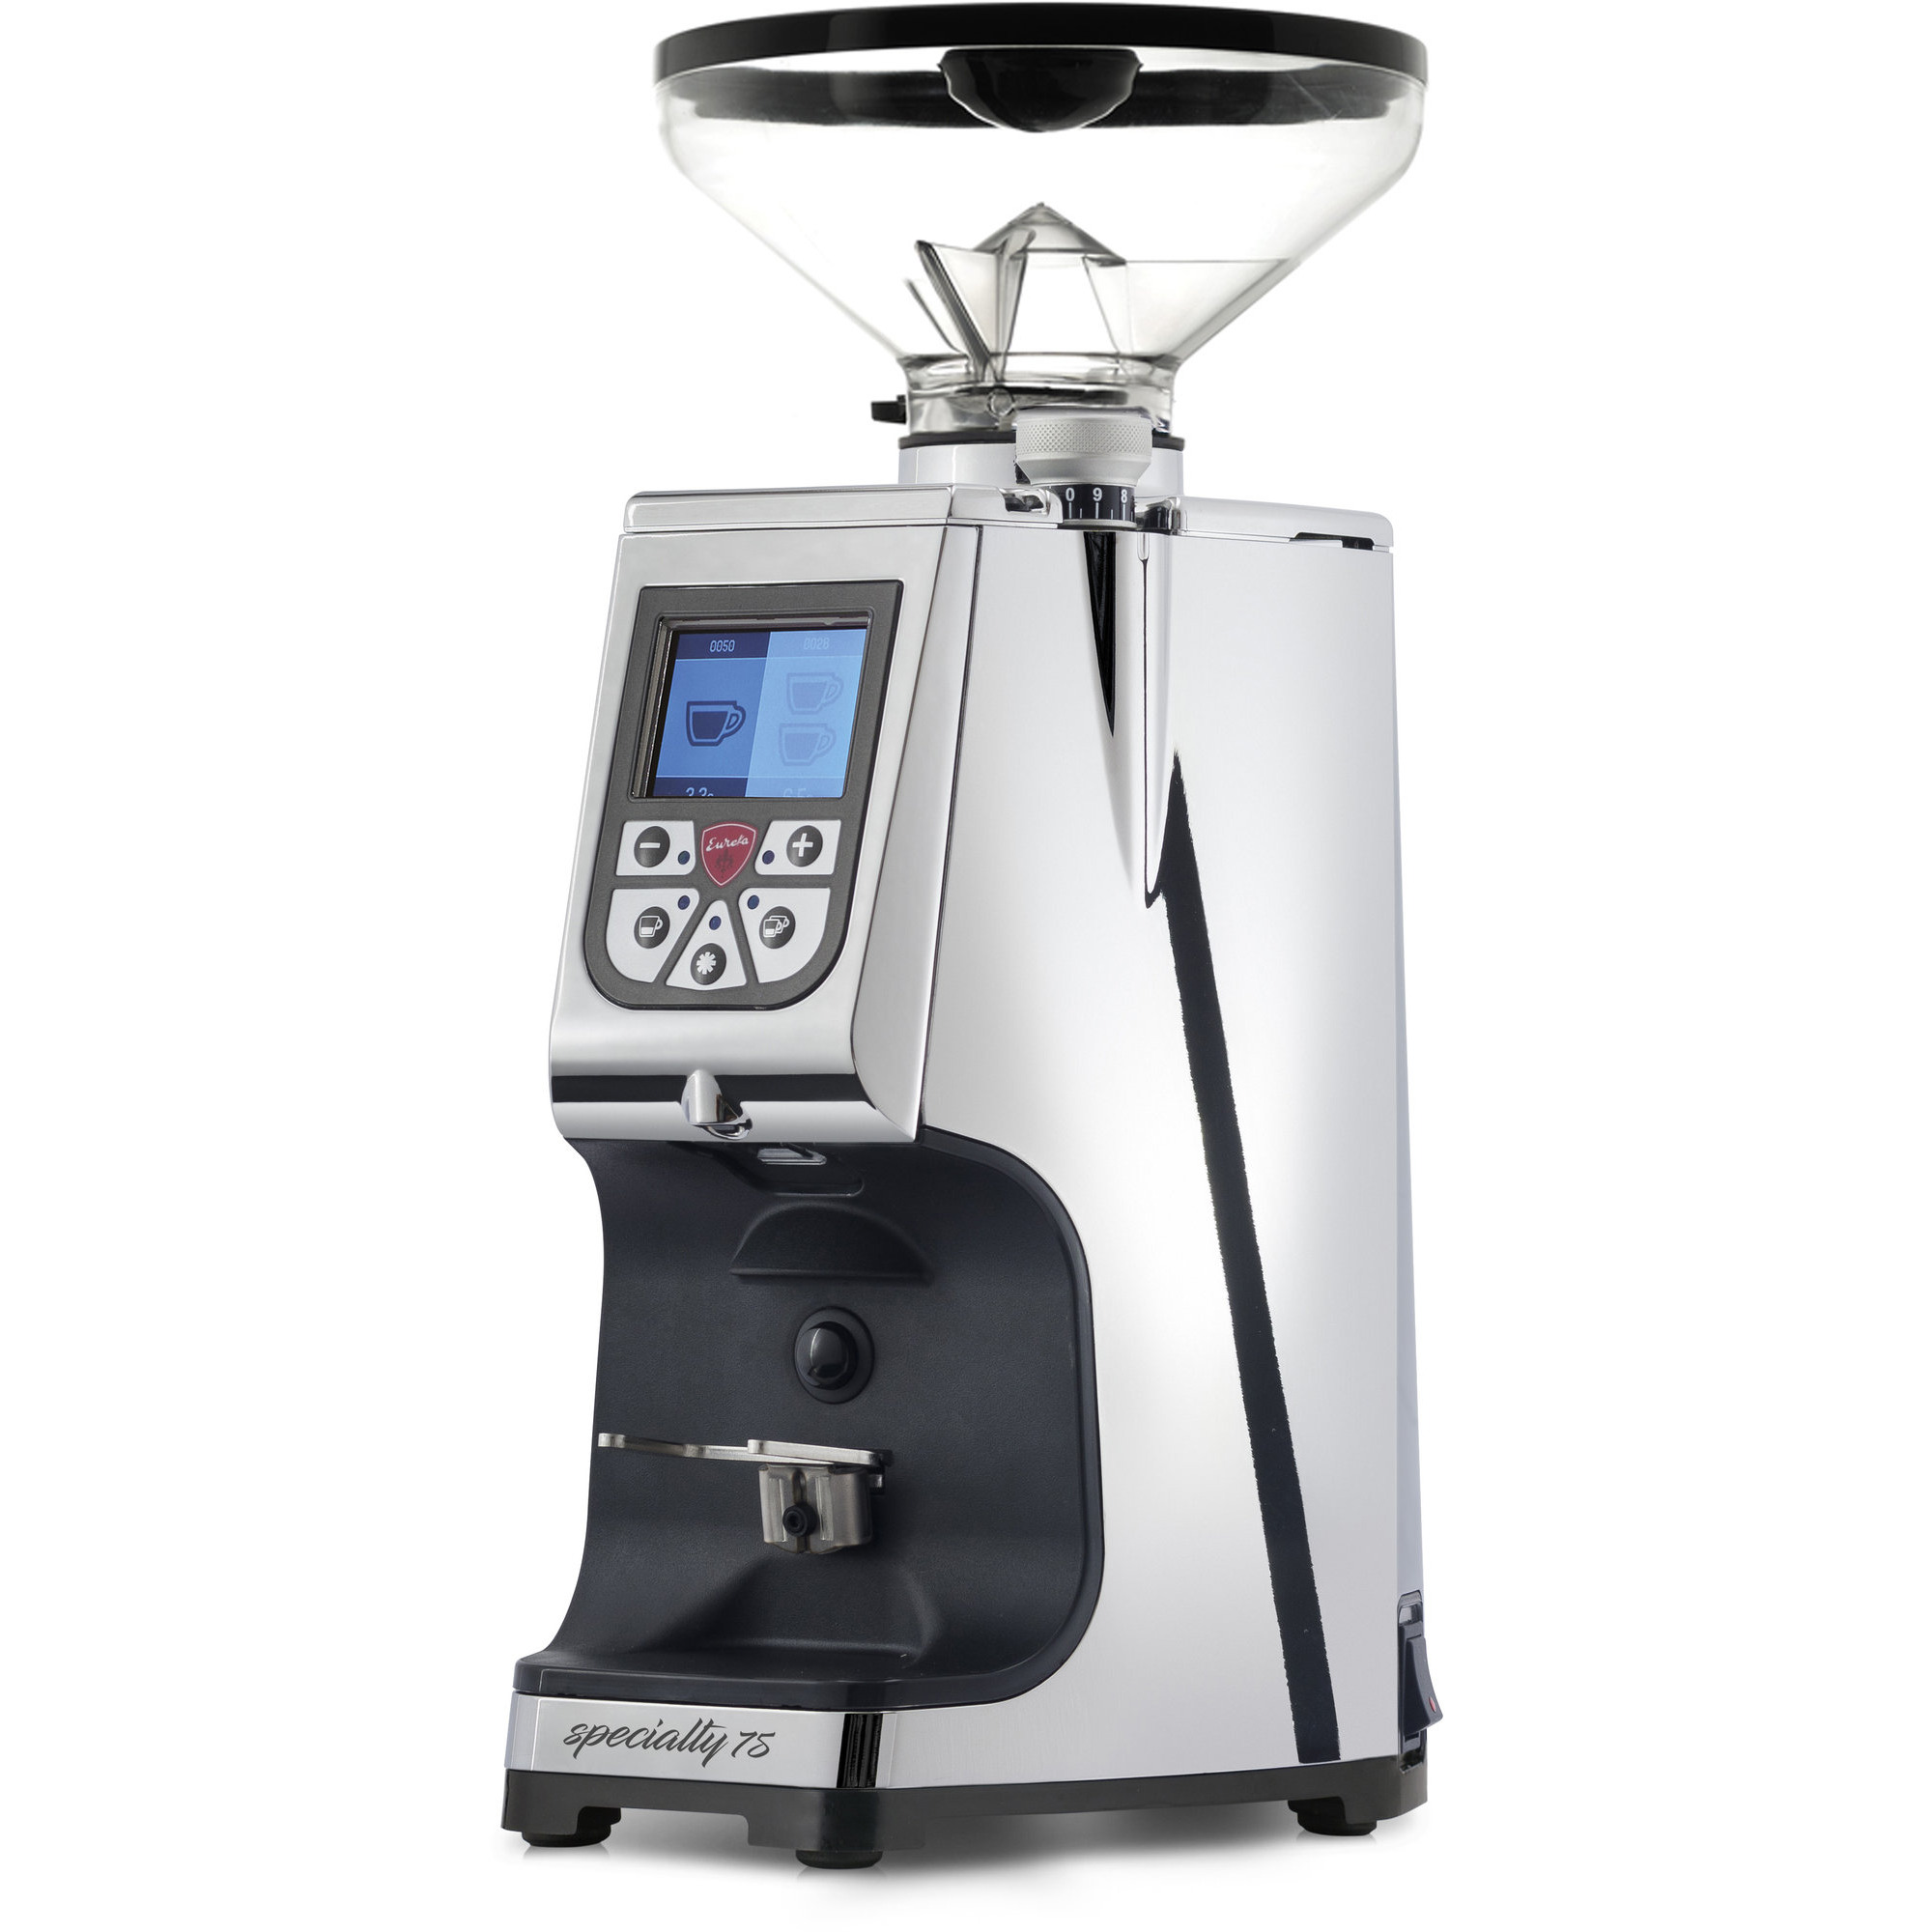 Läs mer om Eureka ATOM Specialty 75 elektrisk kaffekvarn, Chrome